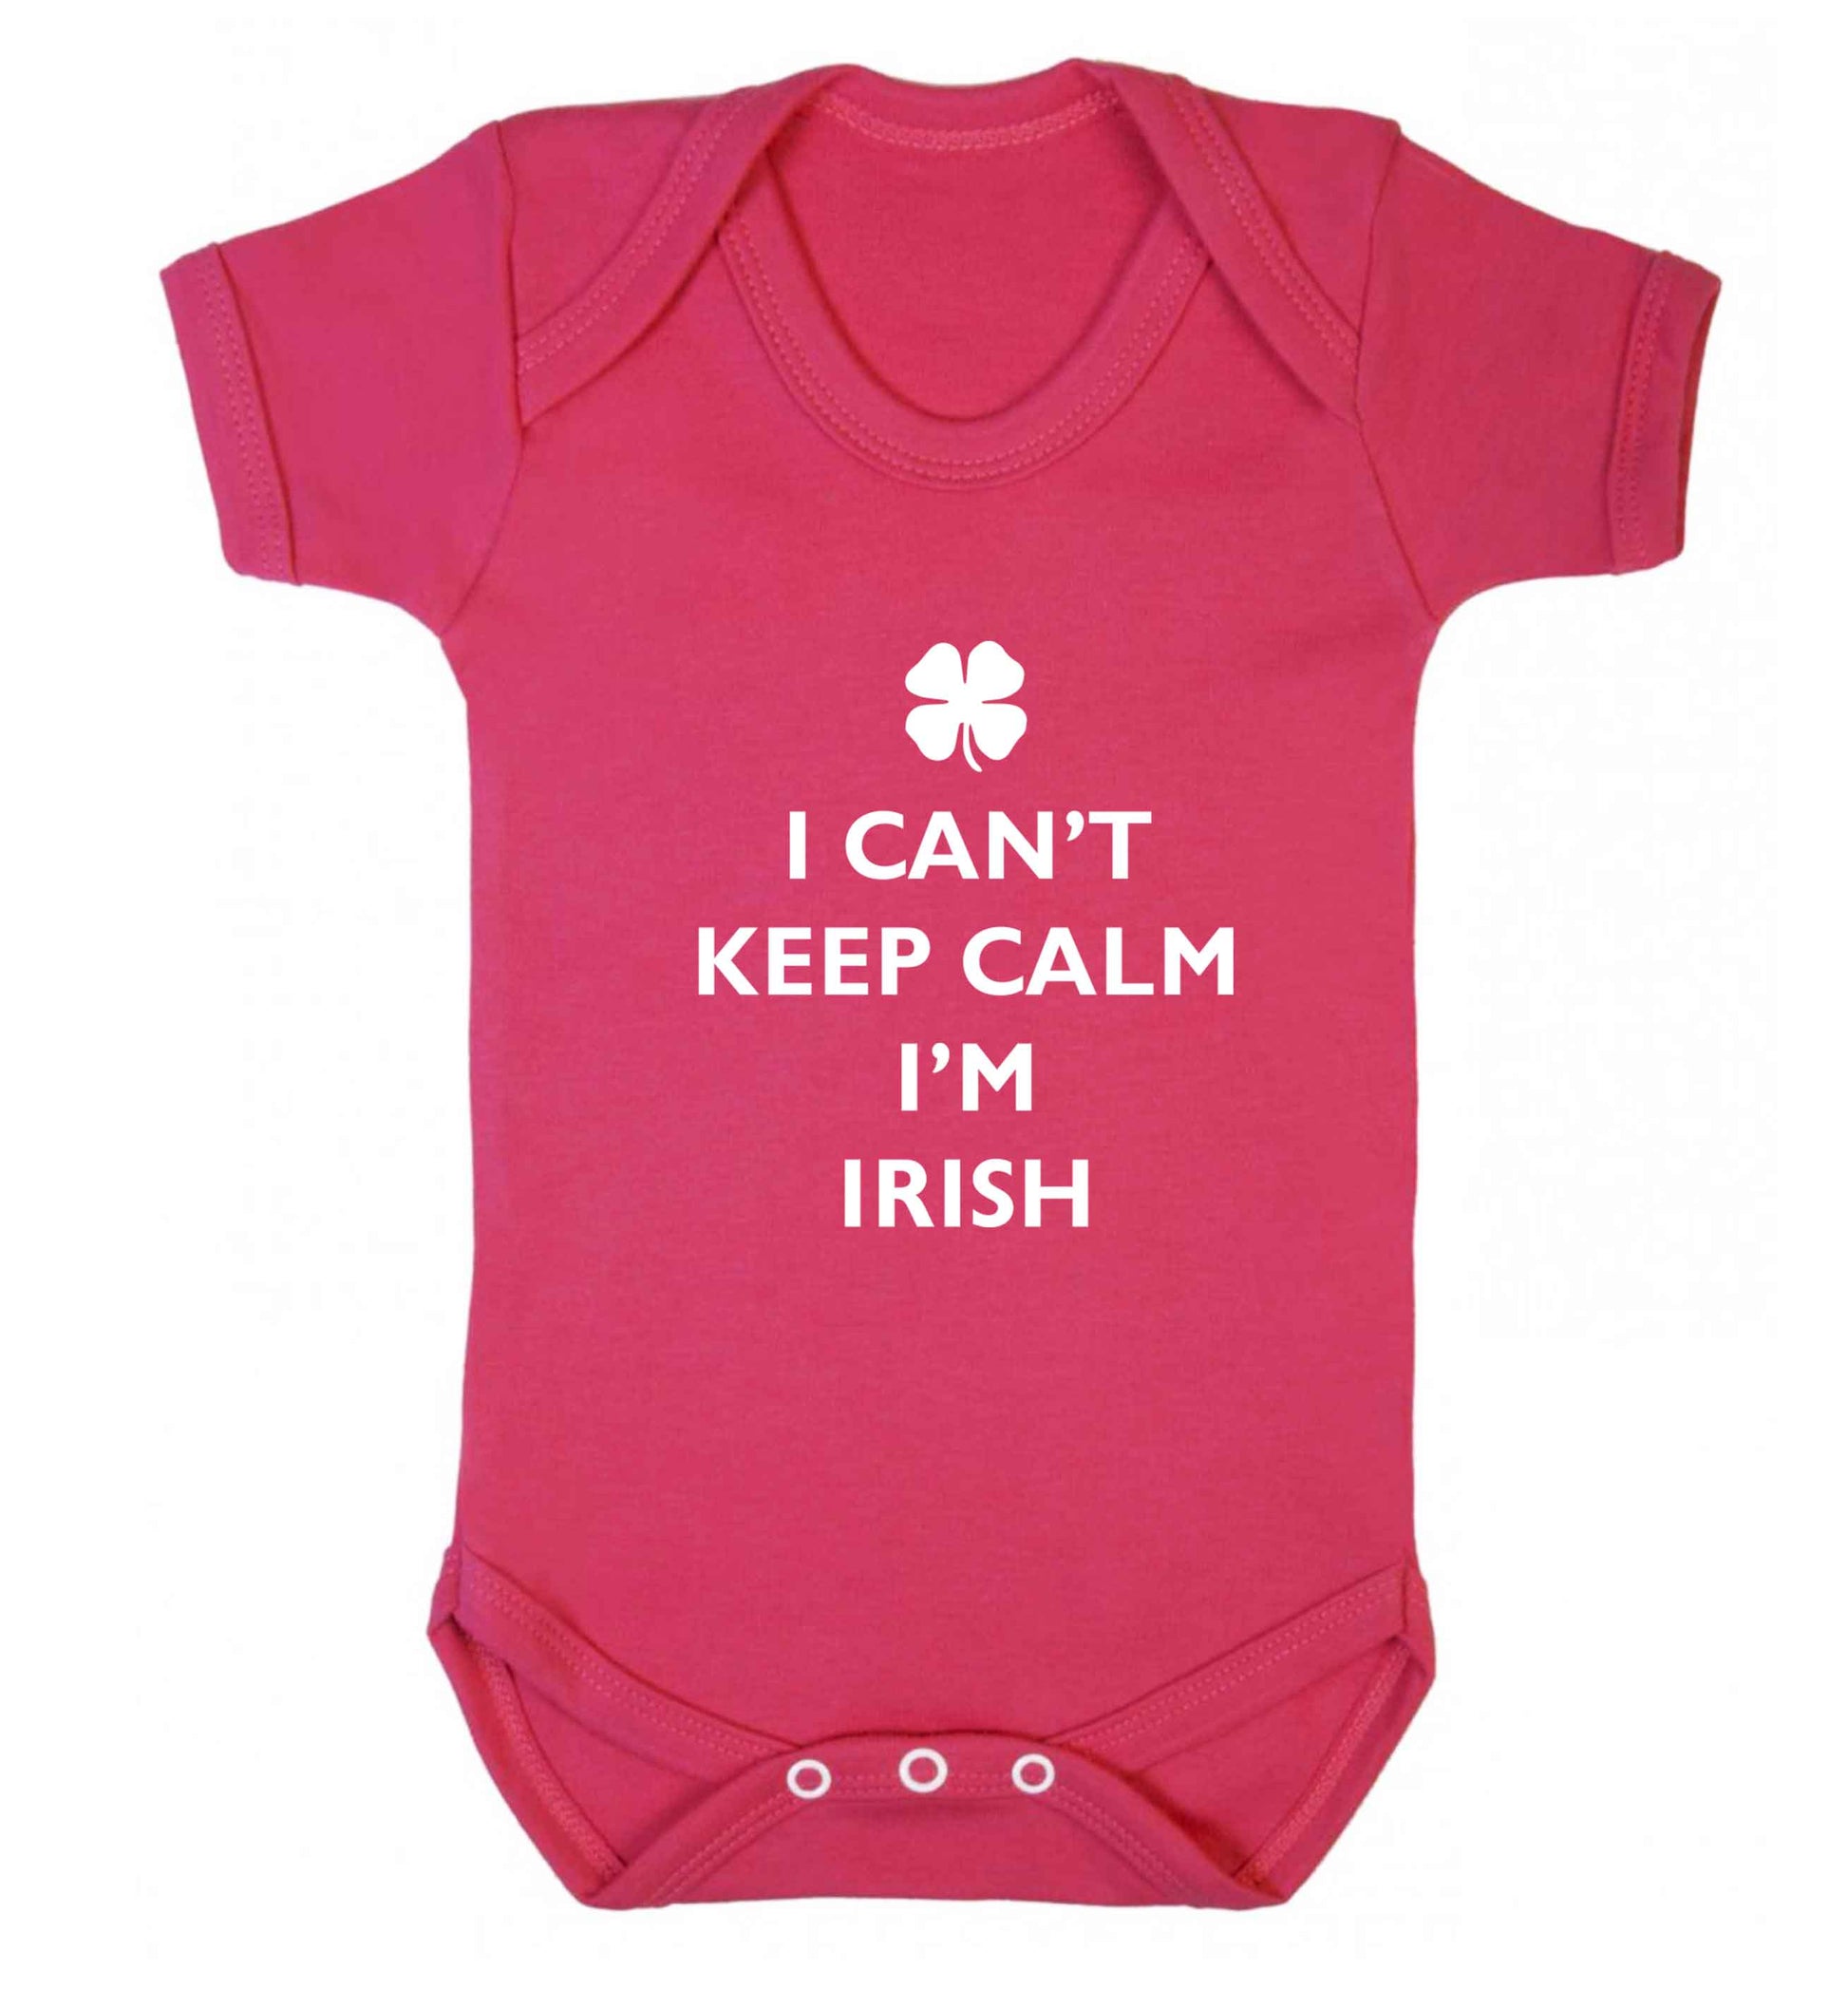 I can't keep calm I'm Irish baby vest dark pink 18-24 months